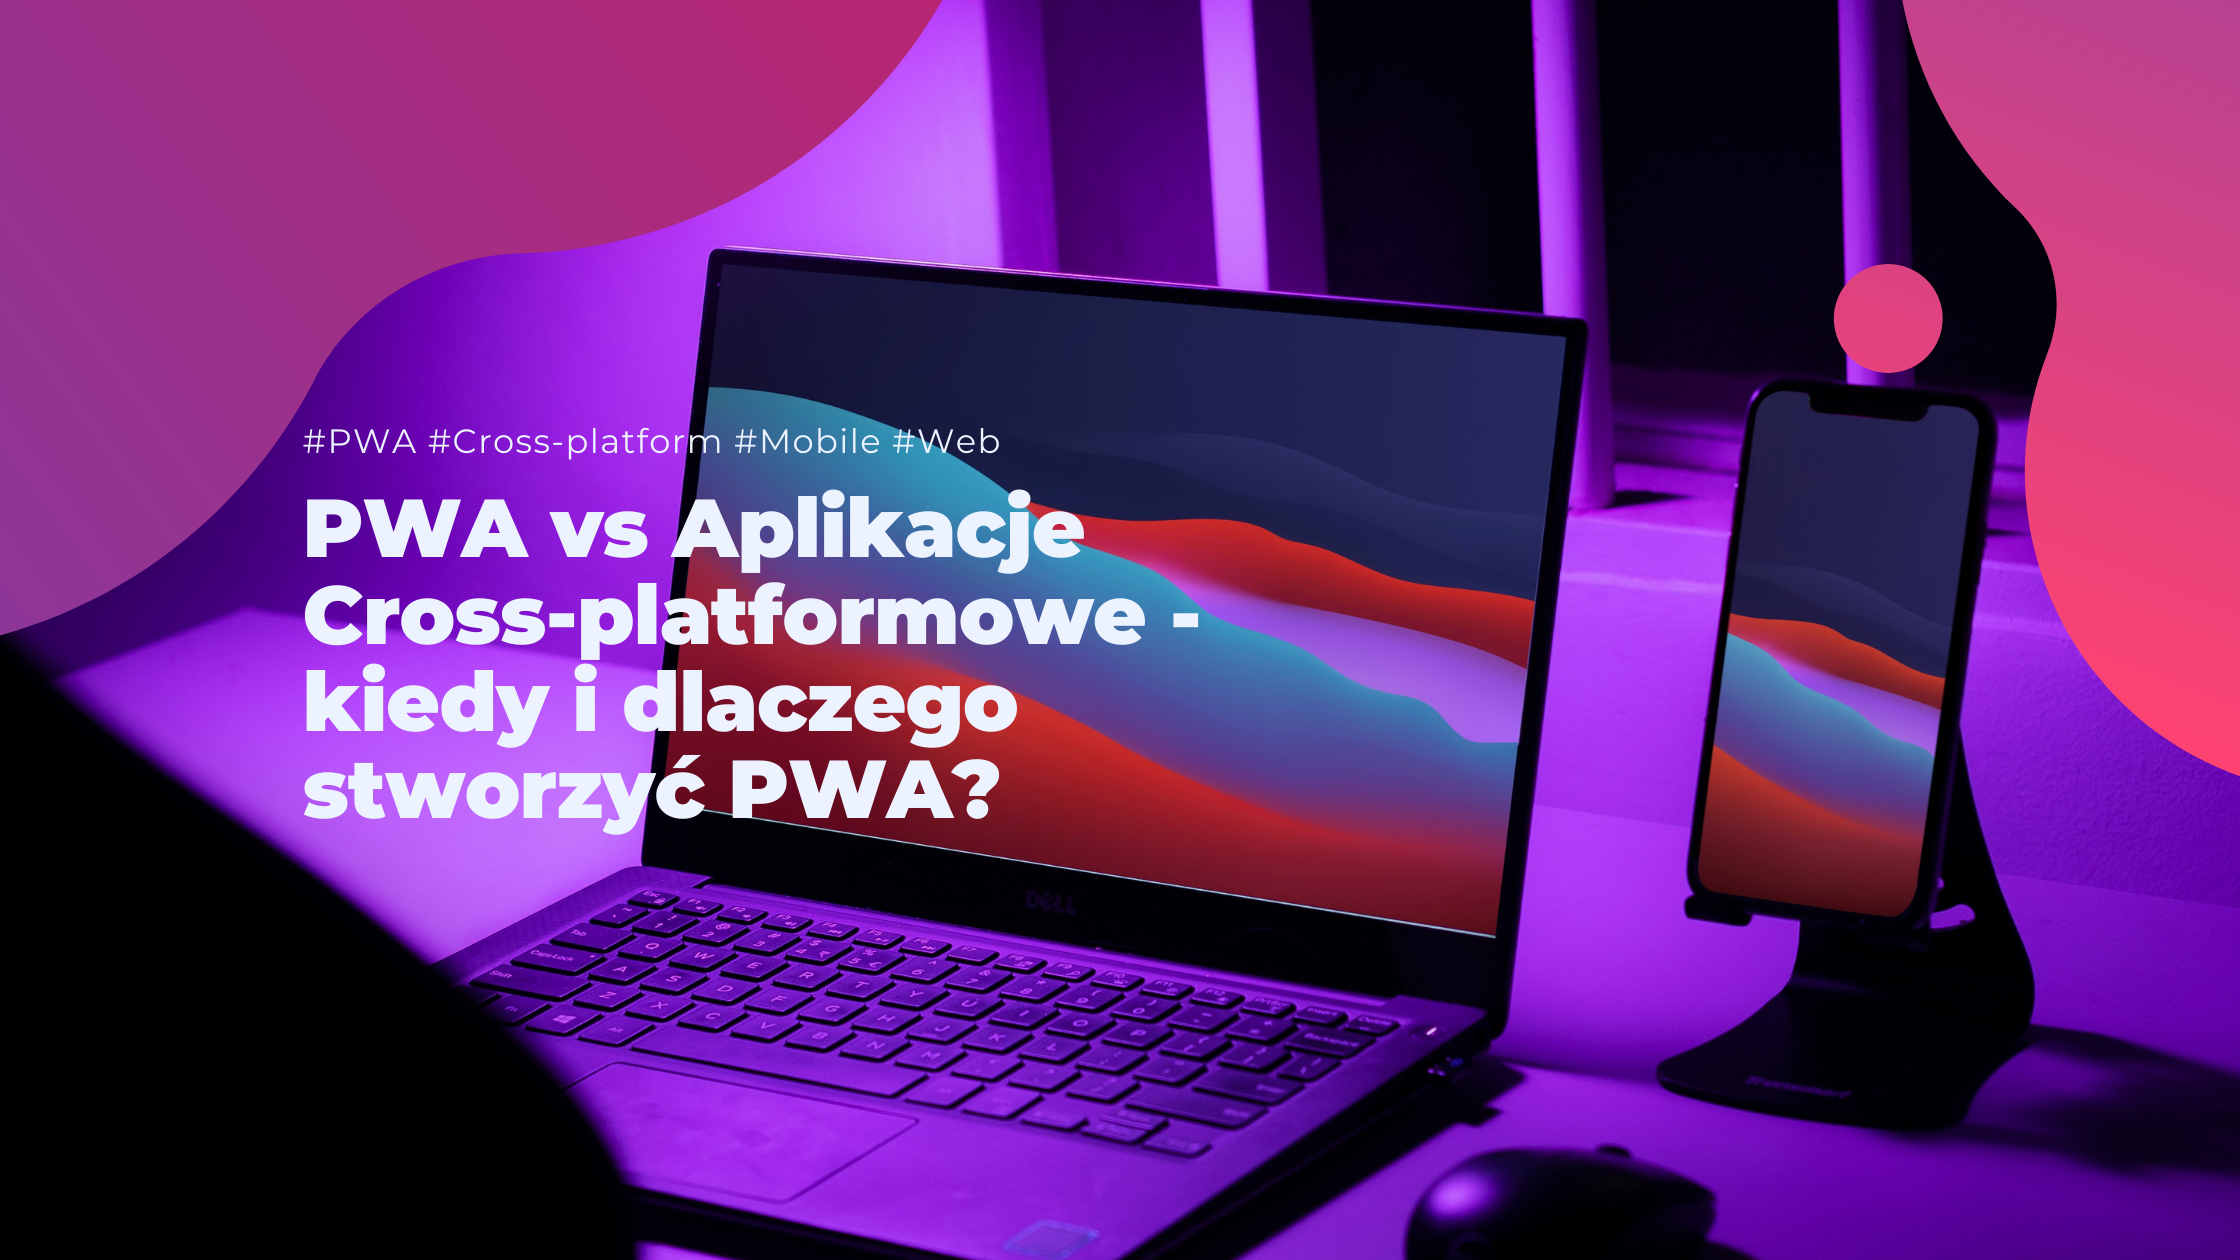 PWA vs Aplikacje Cross-platformowe - kiedy i dlaczego stworzyć PWA?